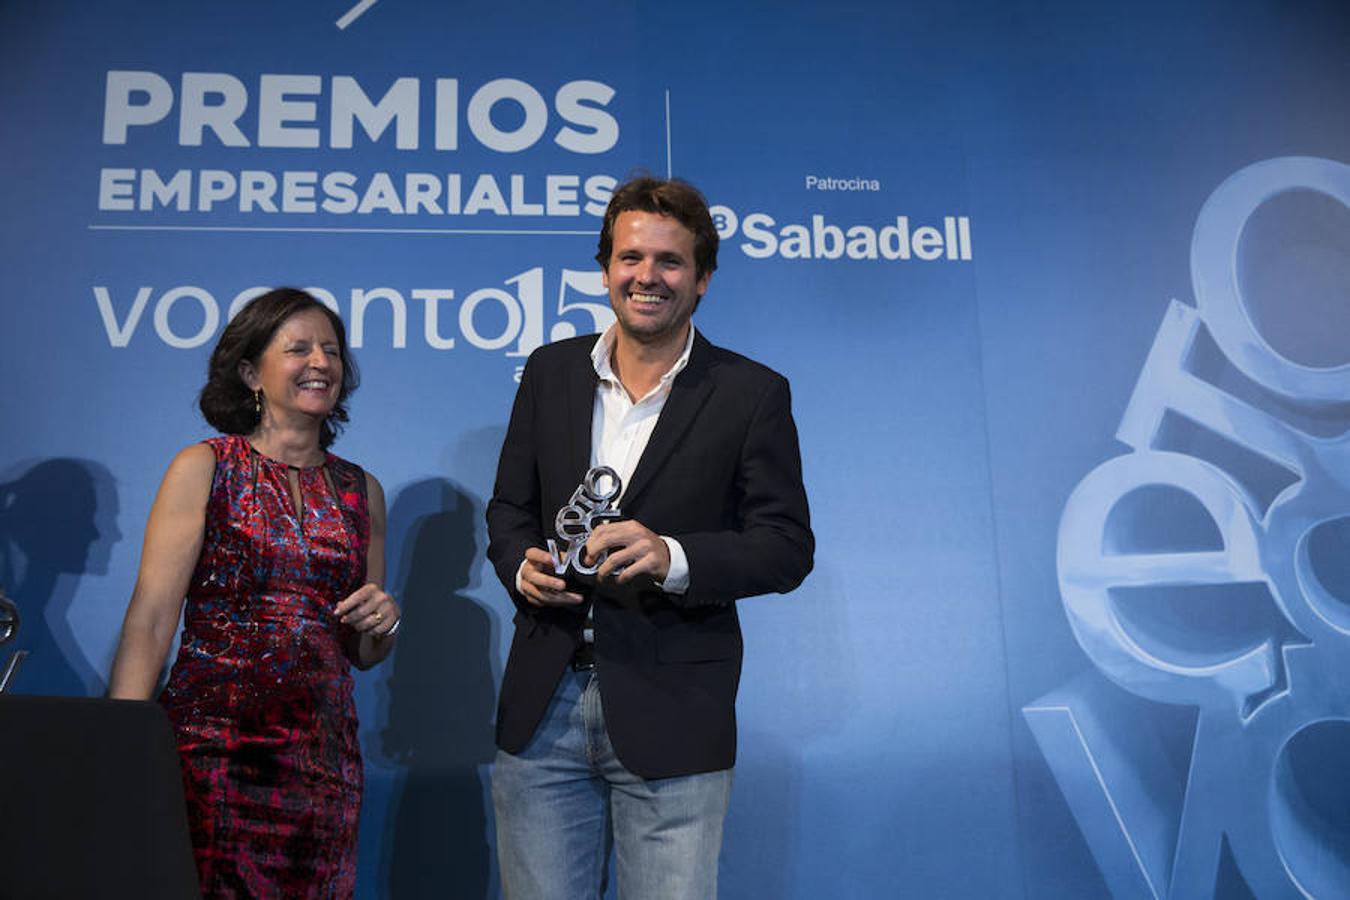 Juan Urdiales (Job&Talent) recibe el premio por «democratizar el empleo» e intermediar entre trabajadores y empresas.